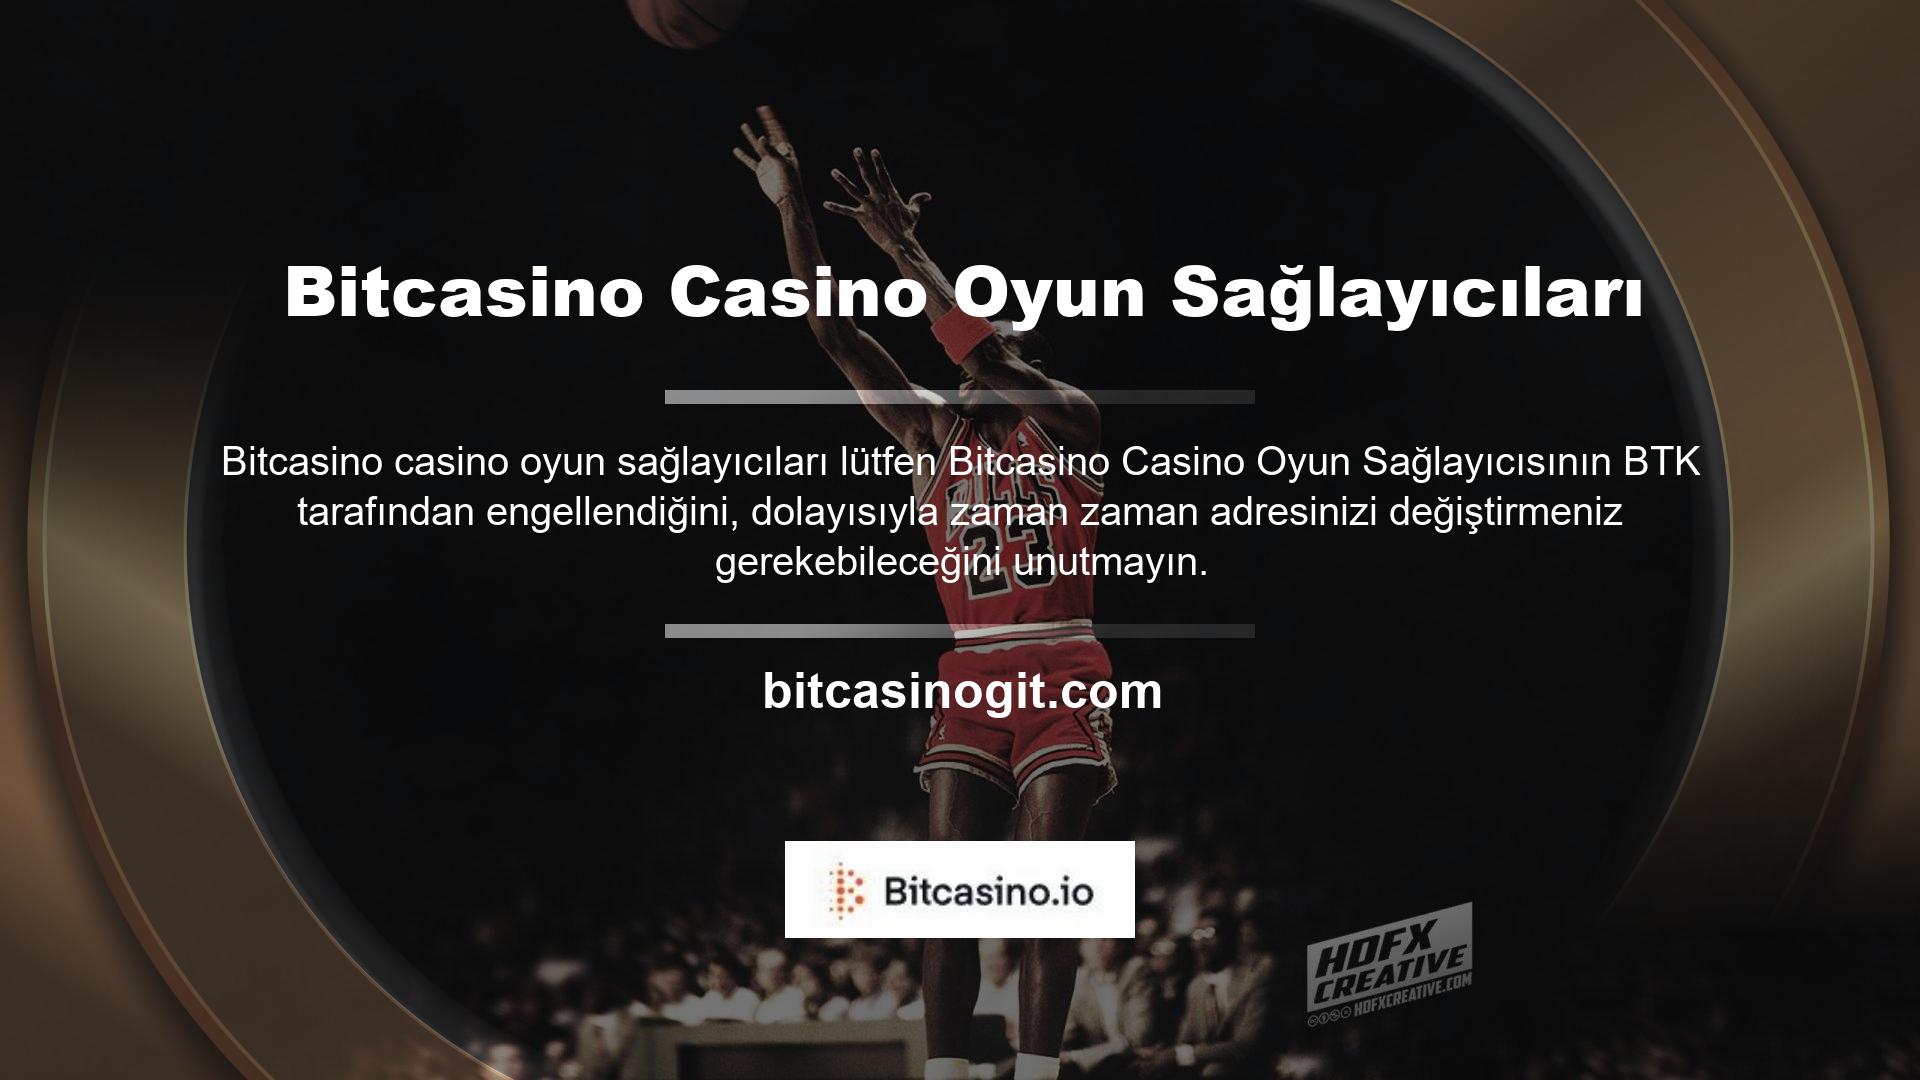 Bitcasino casino oyun sağlayıcısının spor bahisleri, canlı casino ve diğer oyun alanları ne olacak? Sisteme girip üye olduğunuzda Bitcasino "Ödevler" bölümünde size rehberlik edecektir